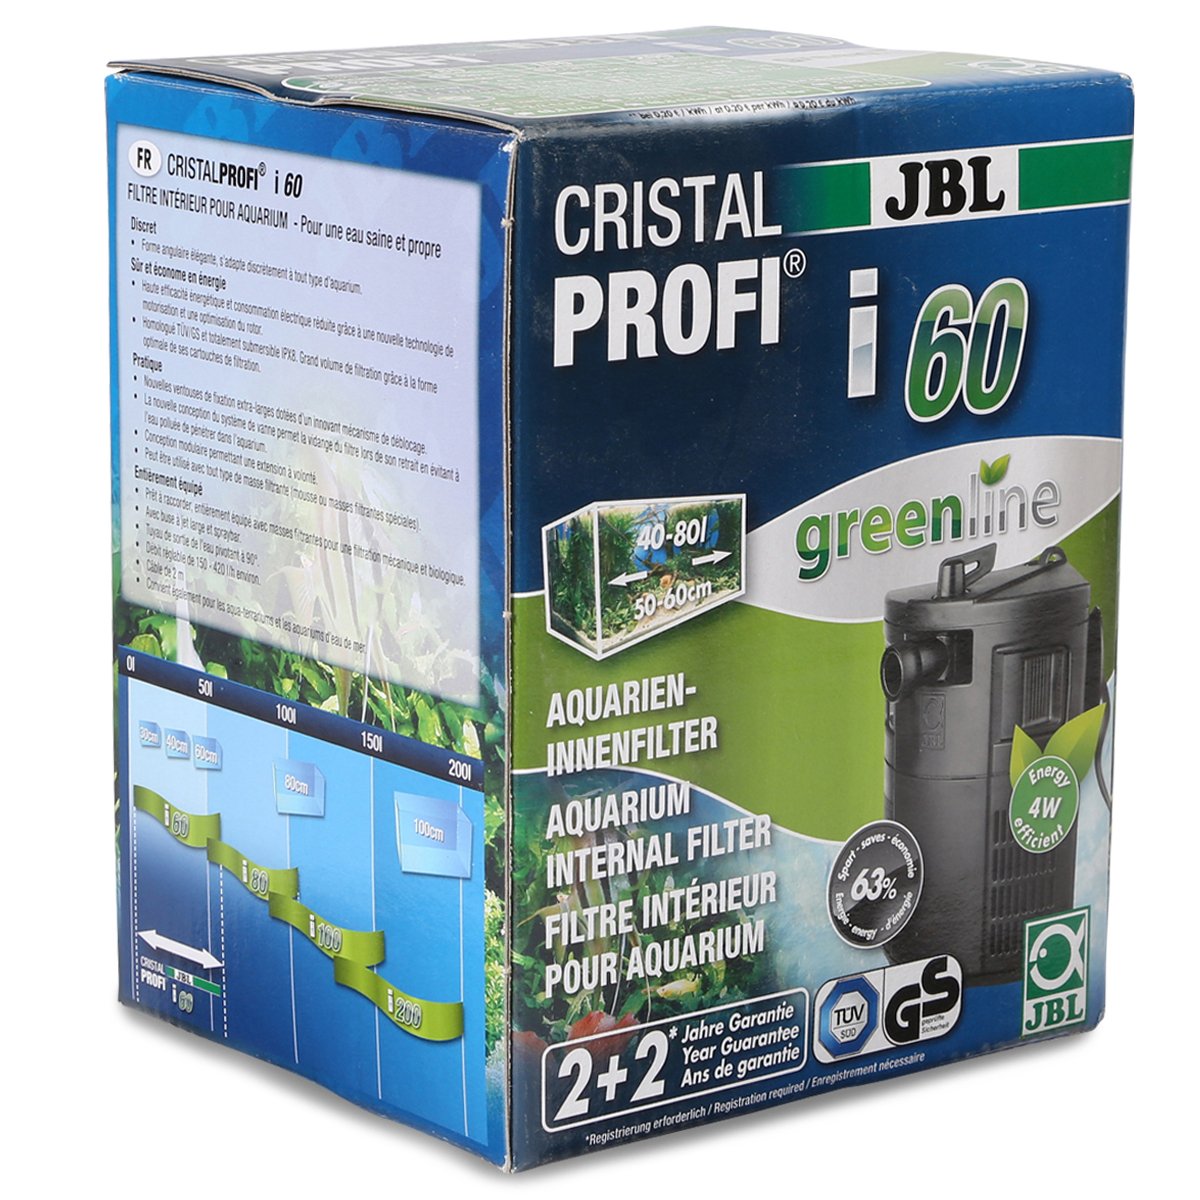 JBL CristalProfi i60 greenline Innenfilter von JBL